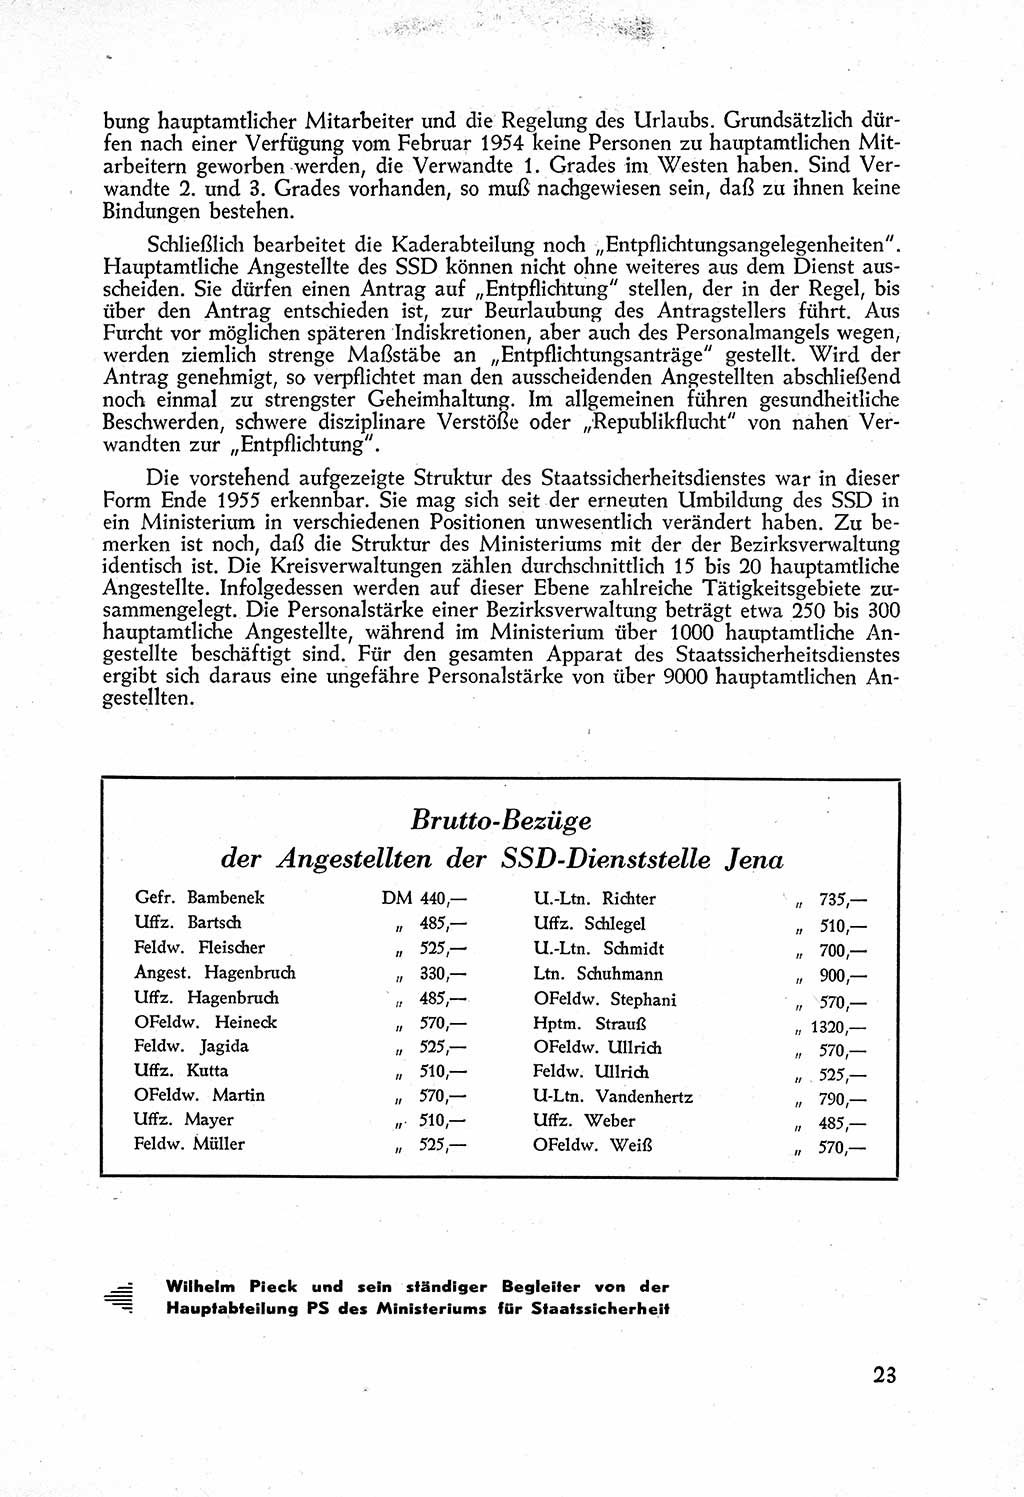 Staatssicherheitsdienst (SSD) [Deutsche Demokratische Republik (DDR)], Untersuchungsausschuß Freiheitlicher Juristen (UfJ) [Bundesrepublik Deutschland (BRD)] 1956, Seite 23 (SSD DDR UfJ BRD 1956, S. 23)